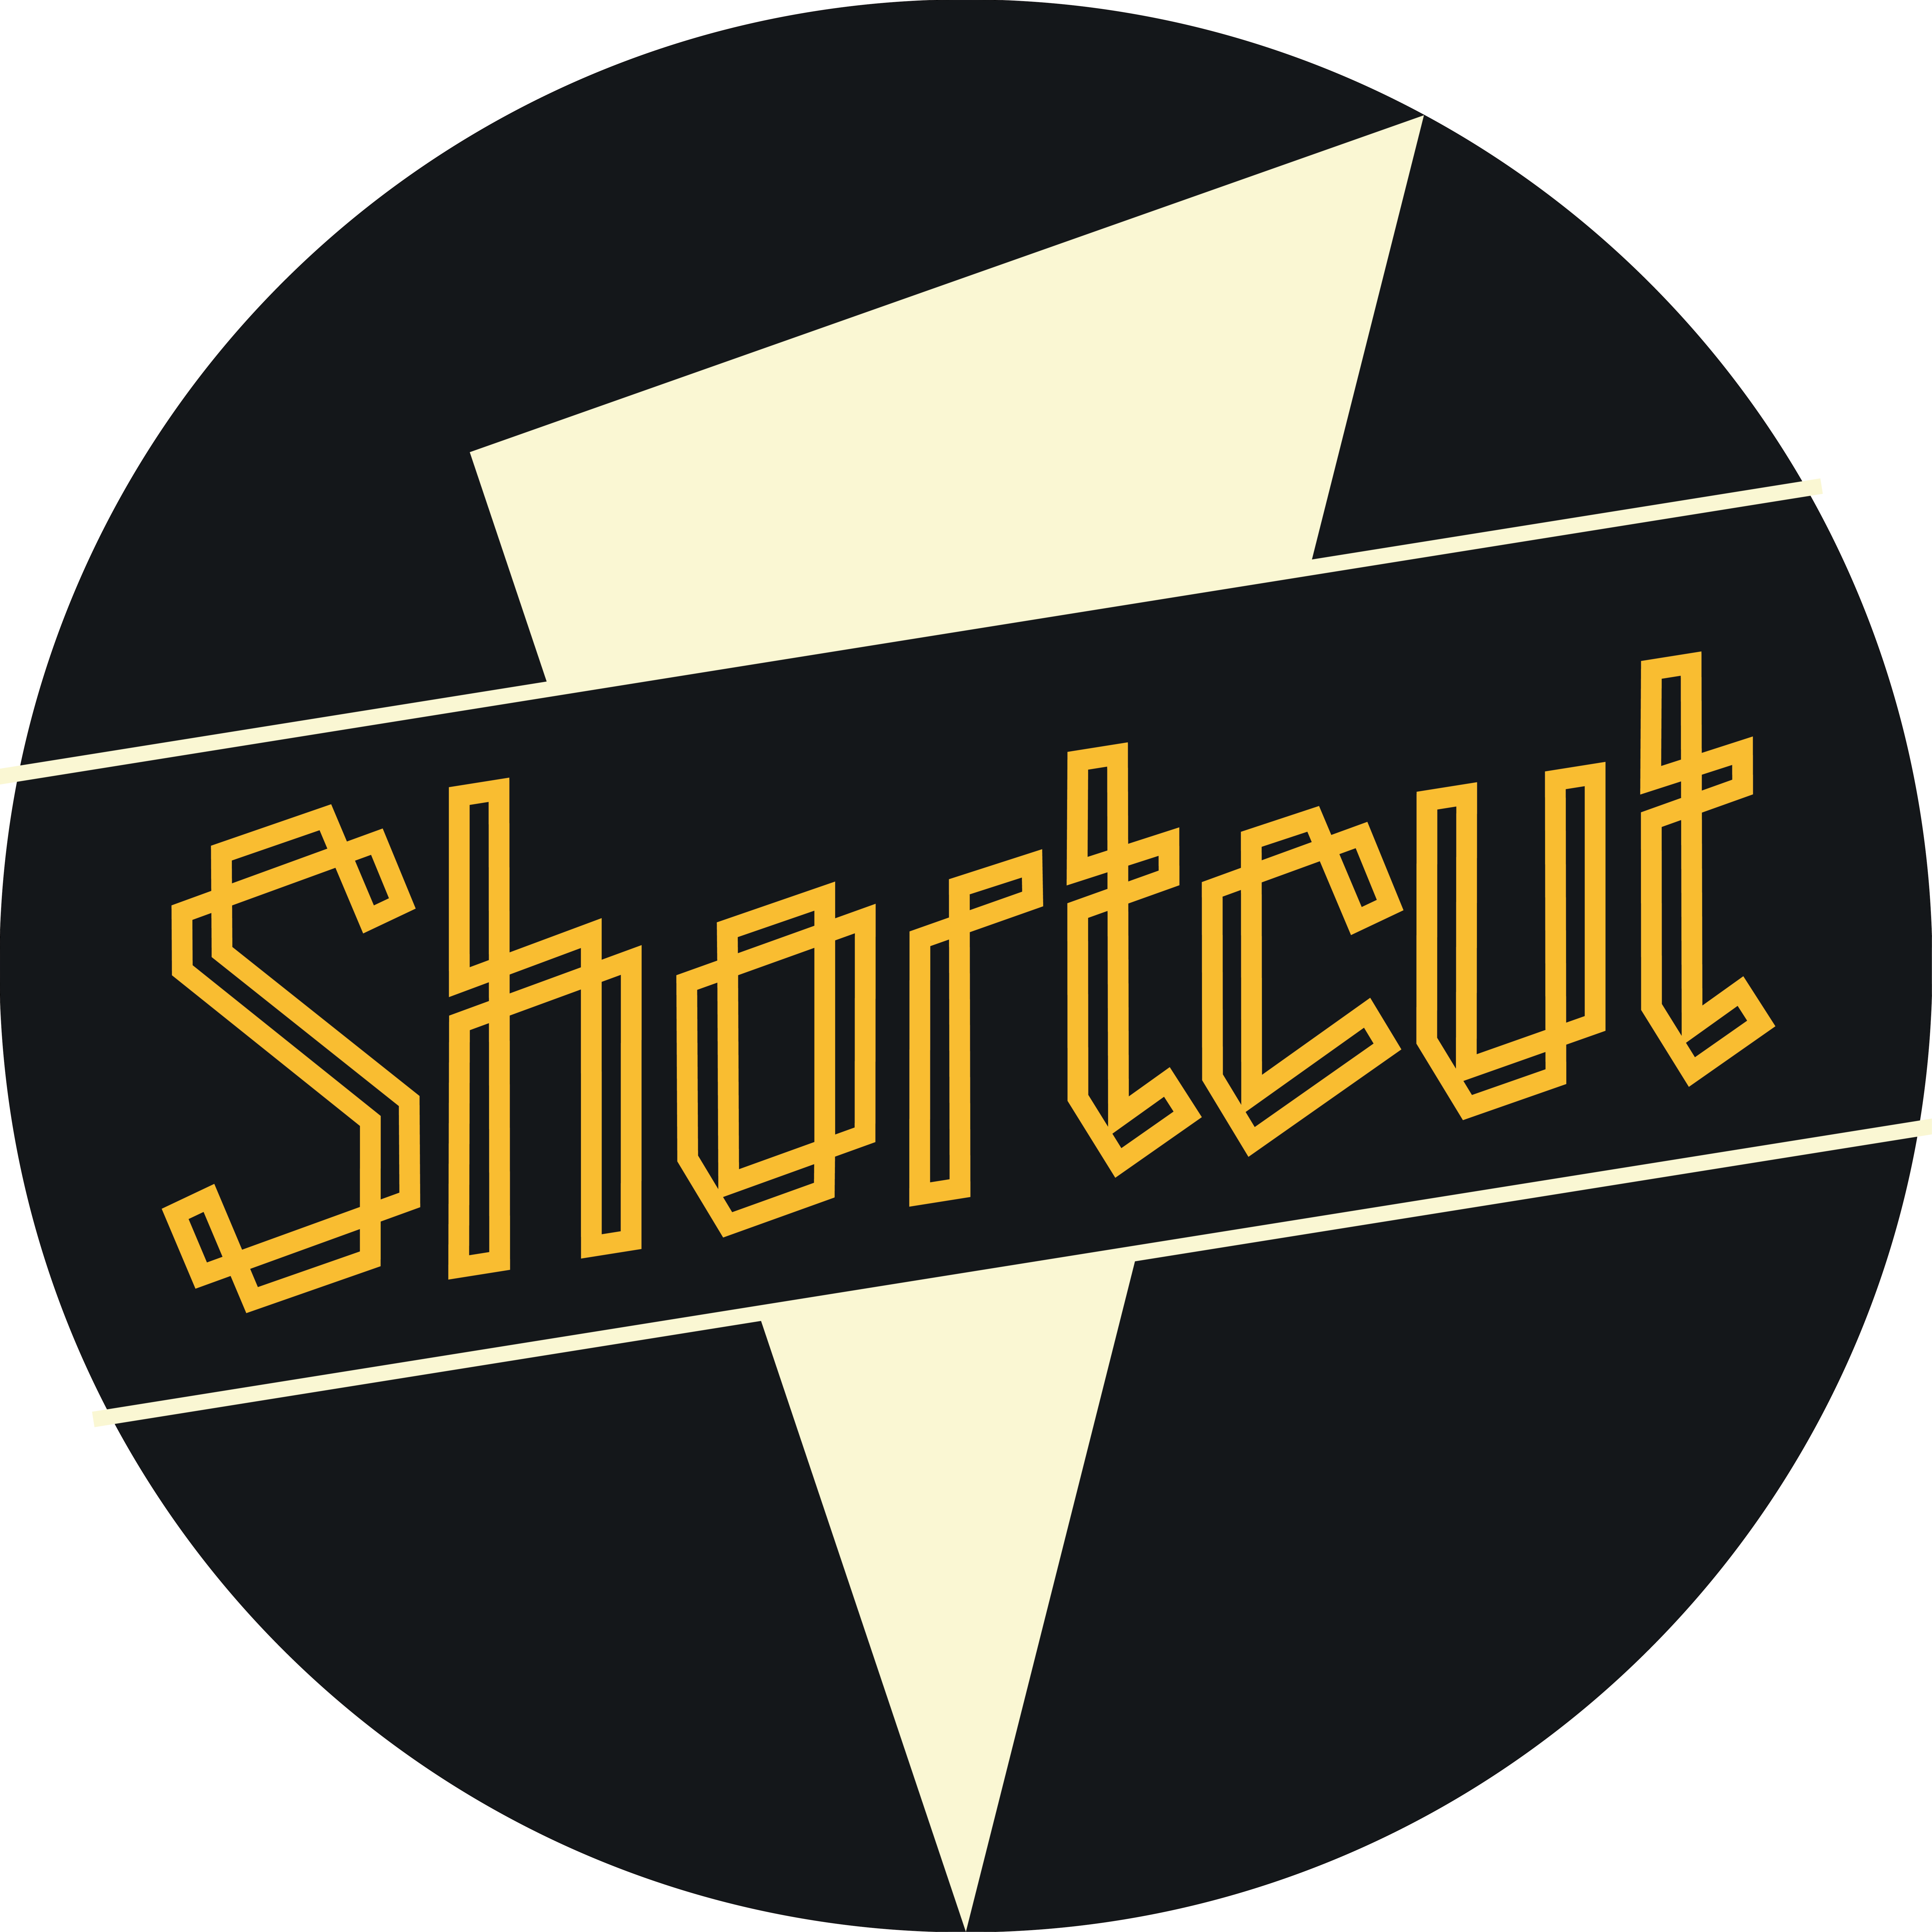 Shortcut On-Air